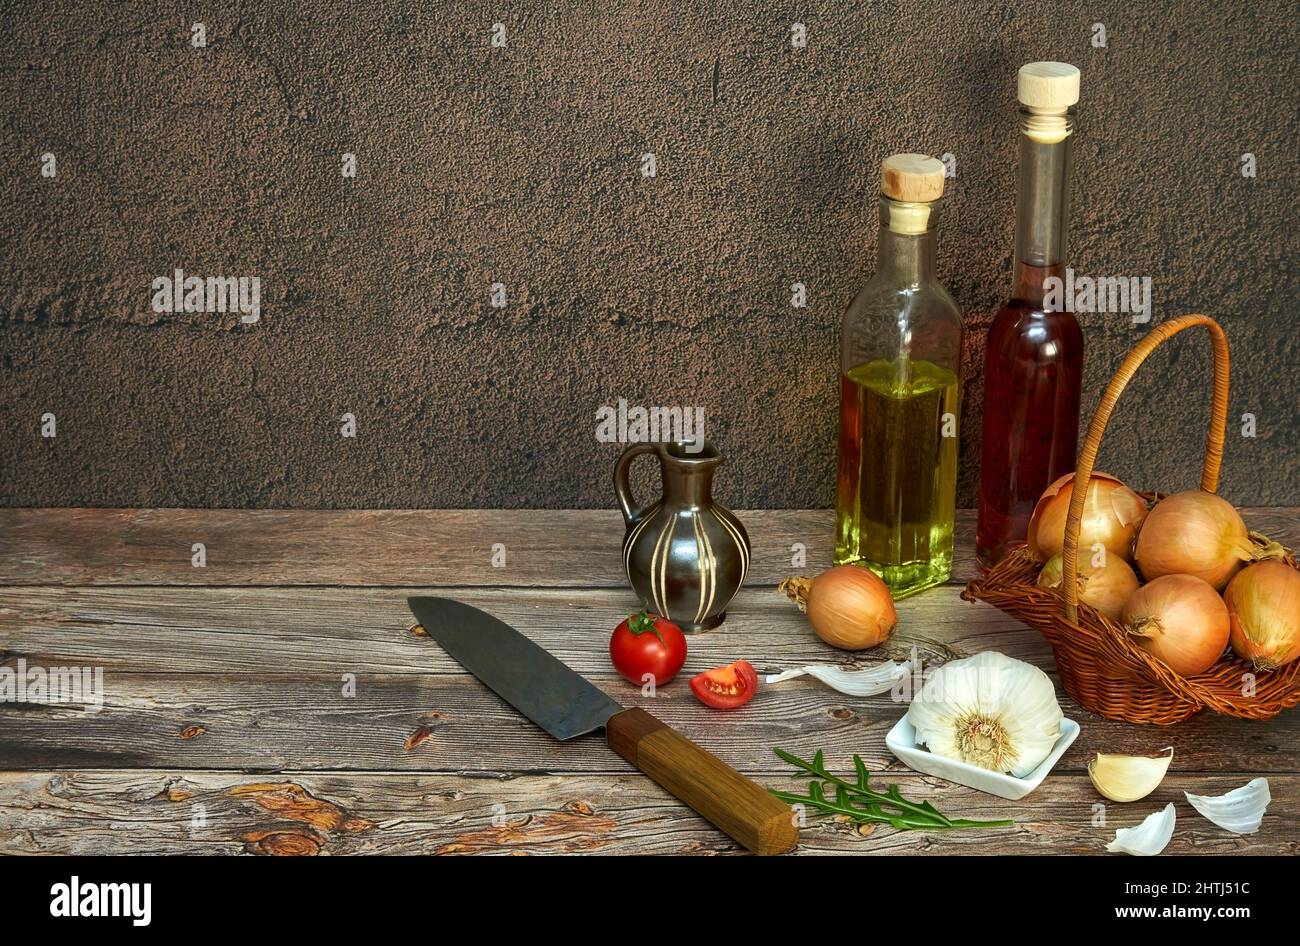 Küchenmotiv mit Zwiebel in einem Körbchen, Knoblauch, Tomaten, Rucola, Fruchtessig, Und Öl mit Messer auf Holzuntergrund Foto Stock